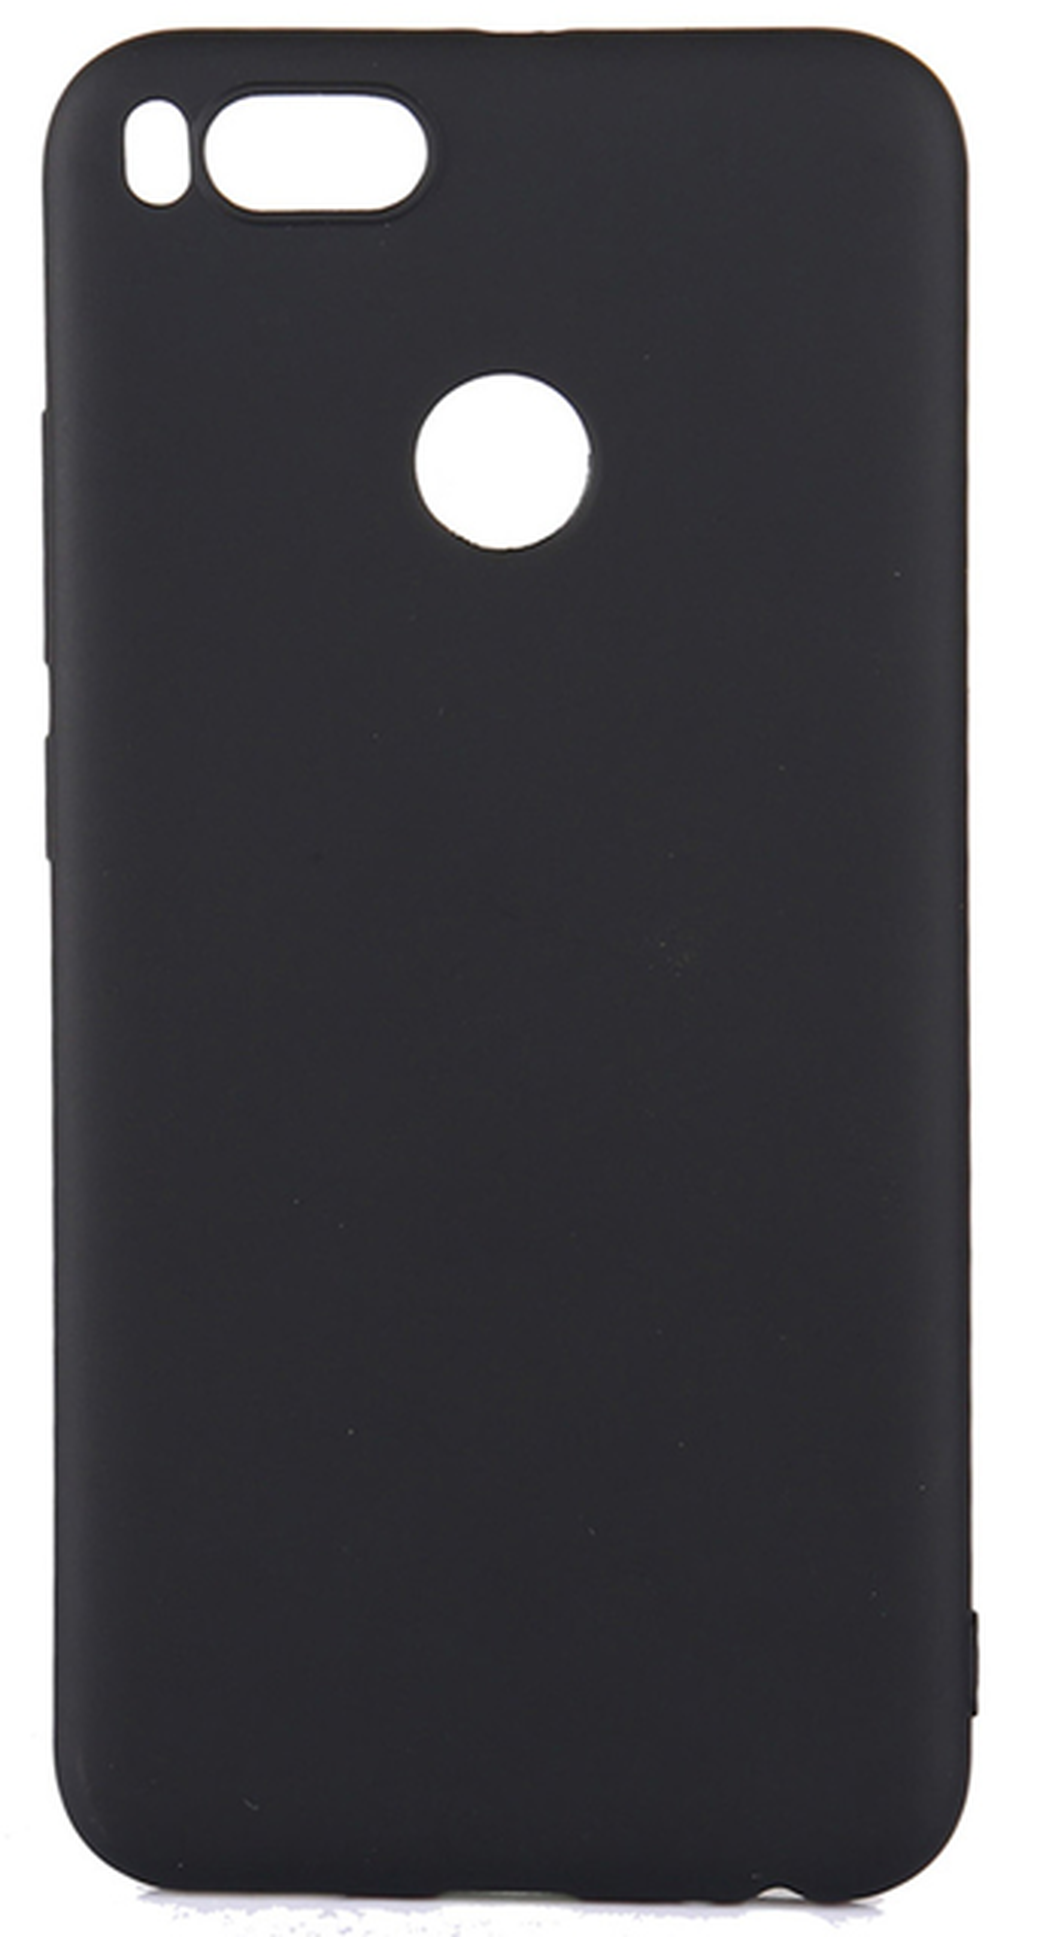 Ультратонкий защитный чехол Asling для Xiaomi 5X, черный фото